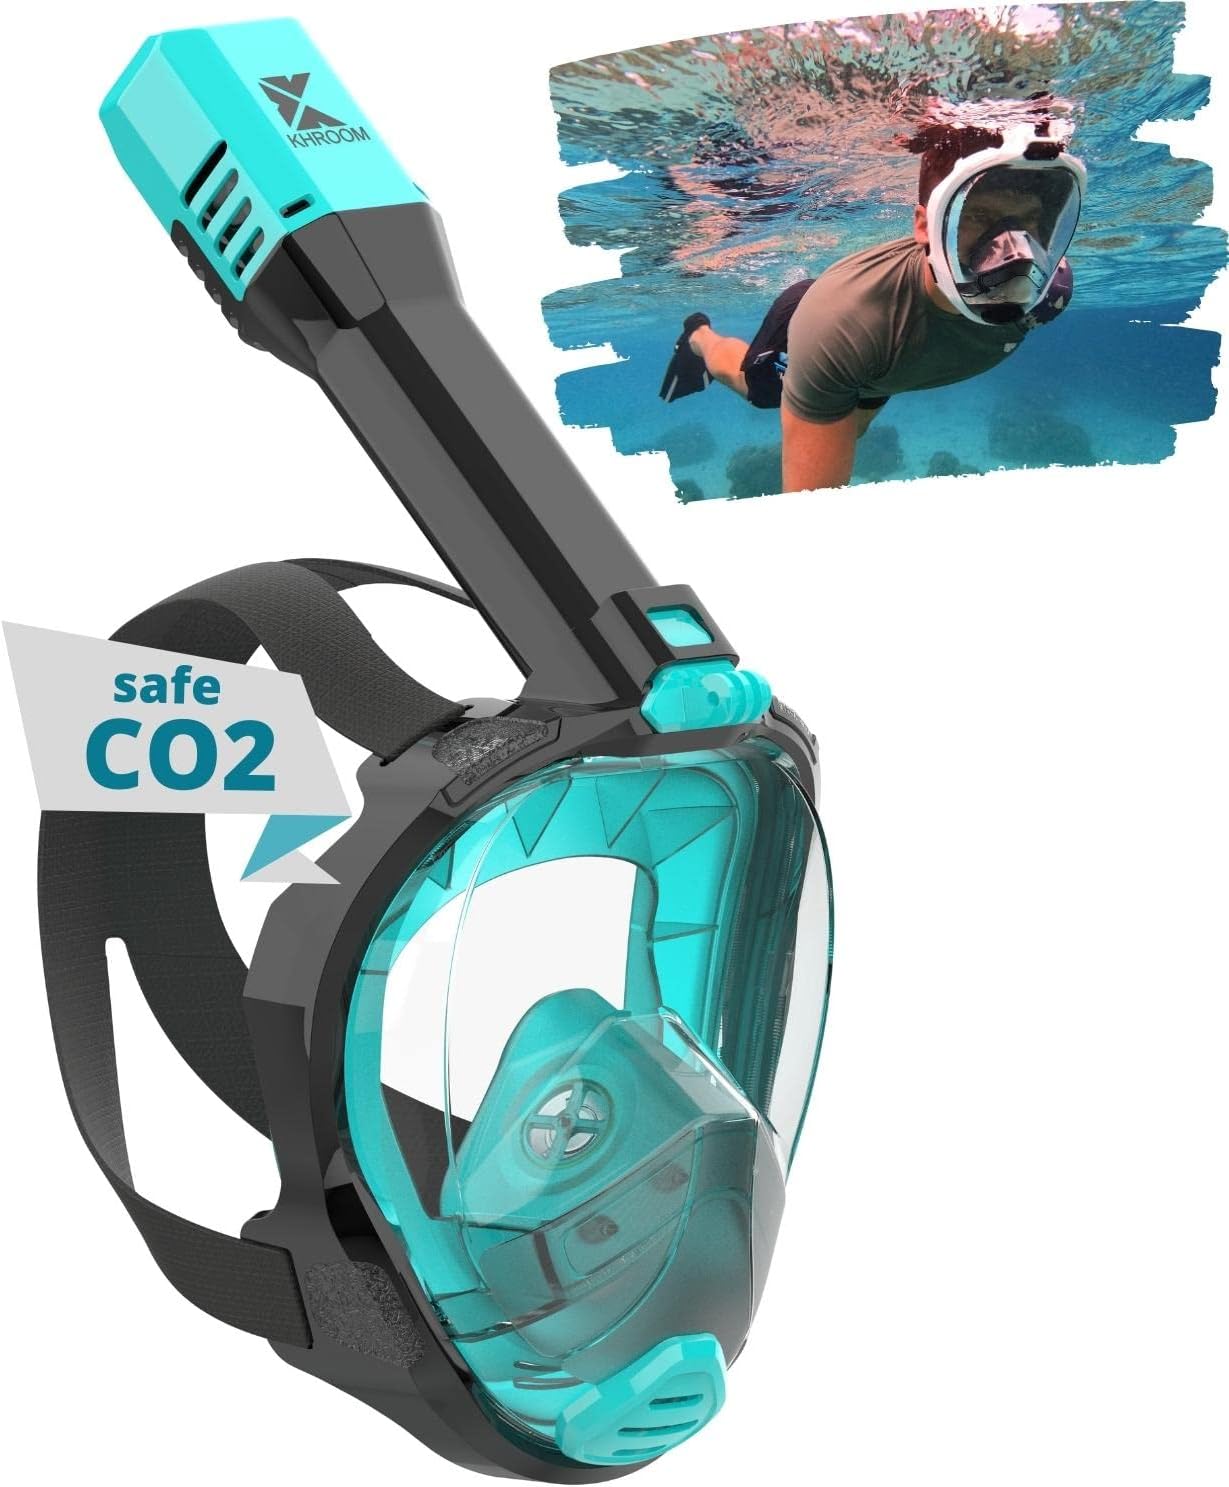 Khroom® Masque de Plongée Intégral Seaview Pro | Notre Meilleur Masque de plongée | Garanti sans Risque de CO2 résiduel | pour Adultes et Enfants | Masque Plongée - fitnessterapy